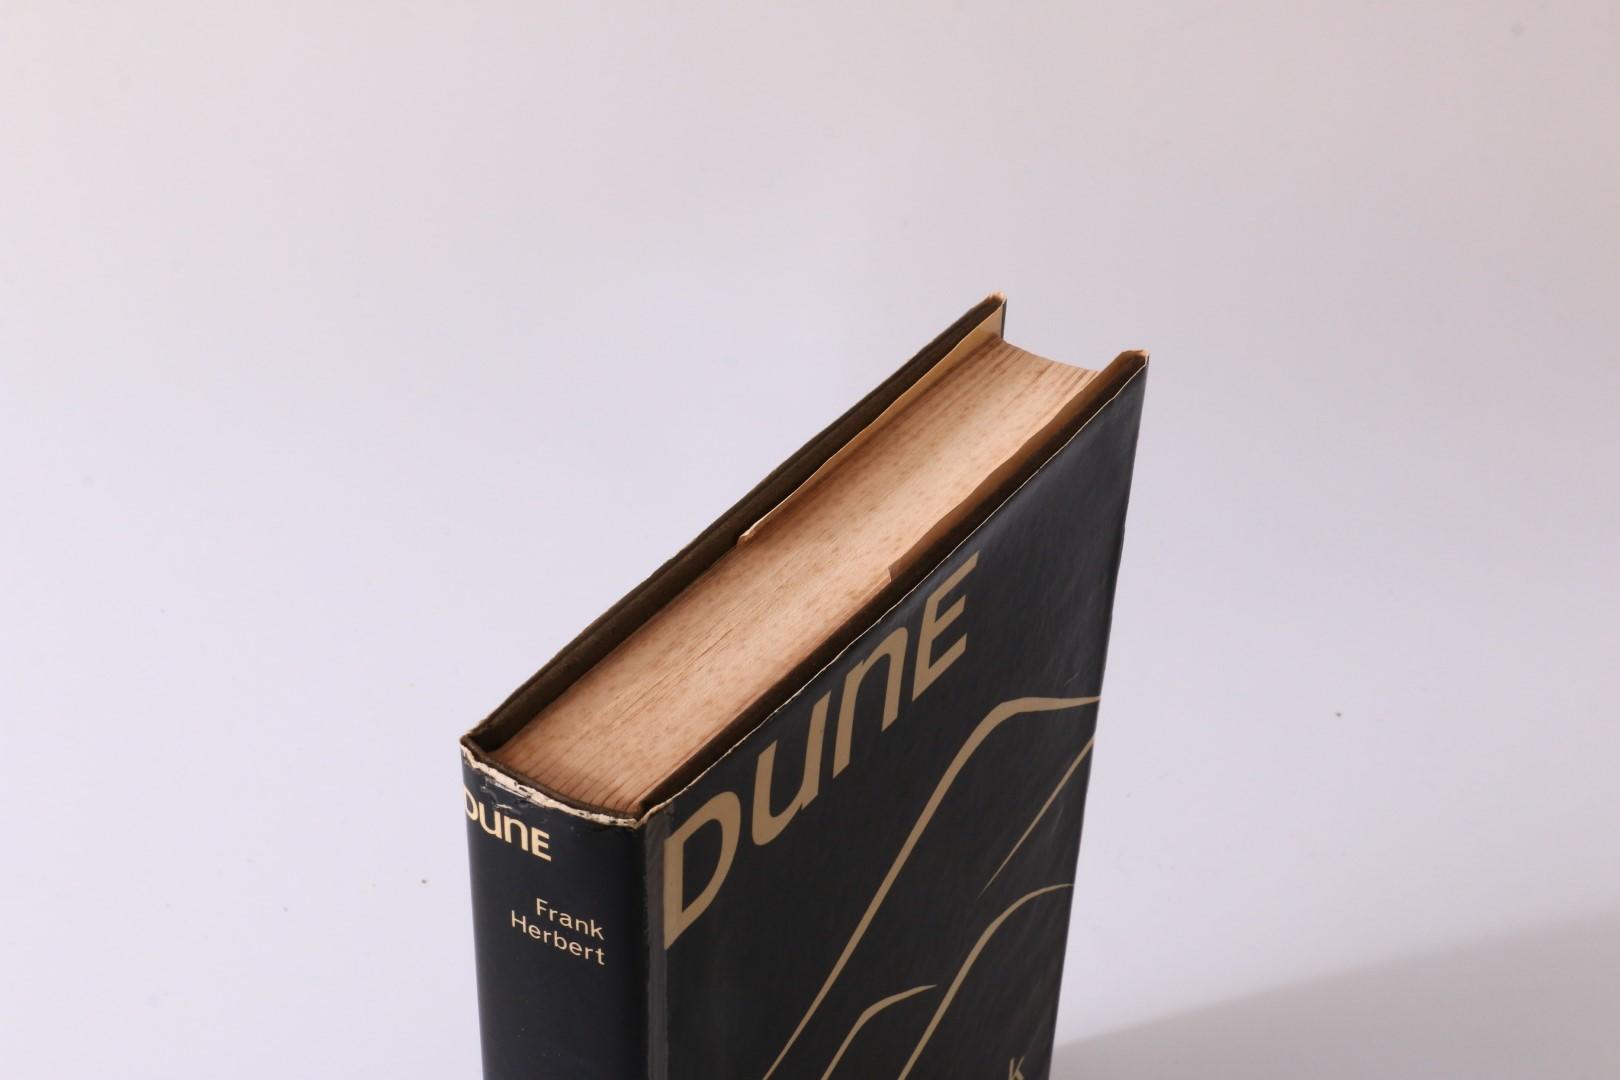 Frank Herbert - Dune - Gollancz, 1965, First Edition.